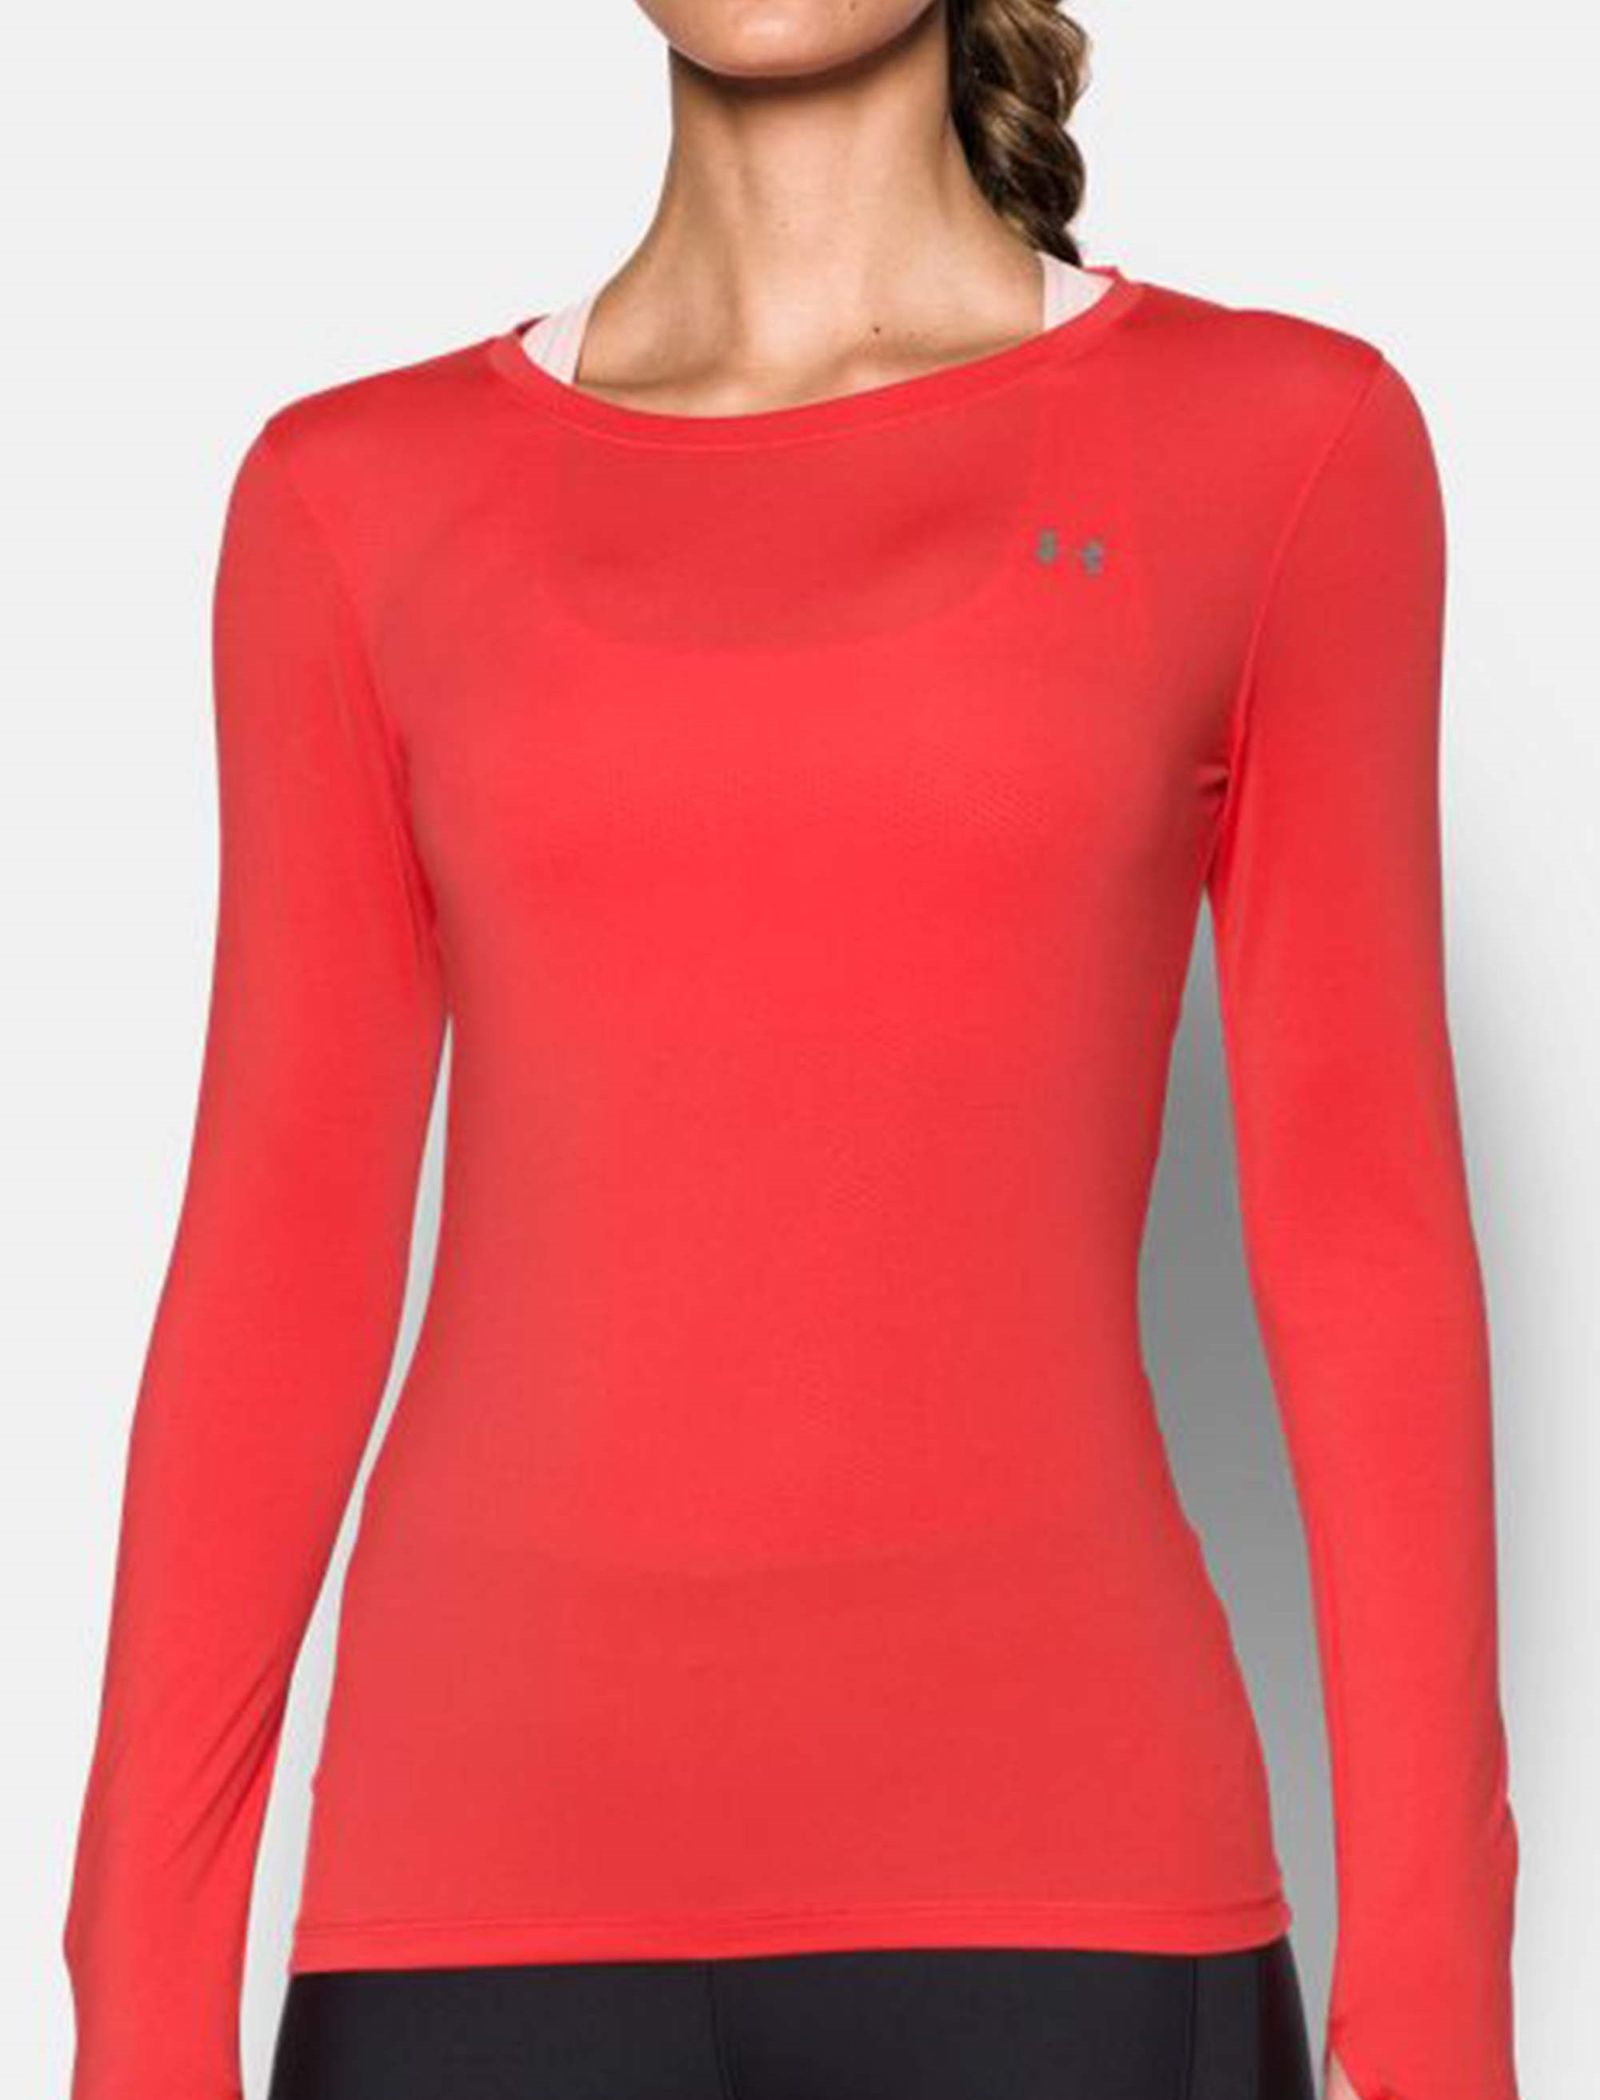 تی شرت ورزشی آستین بلند زنانه - آندر آرمور - قرمز - 4